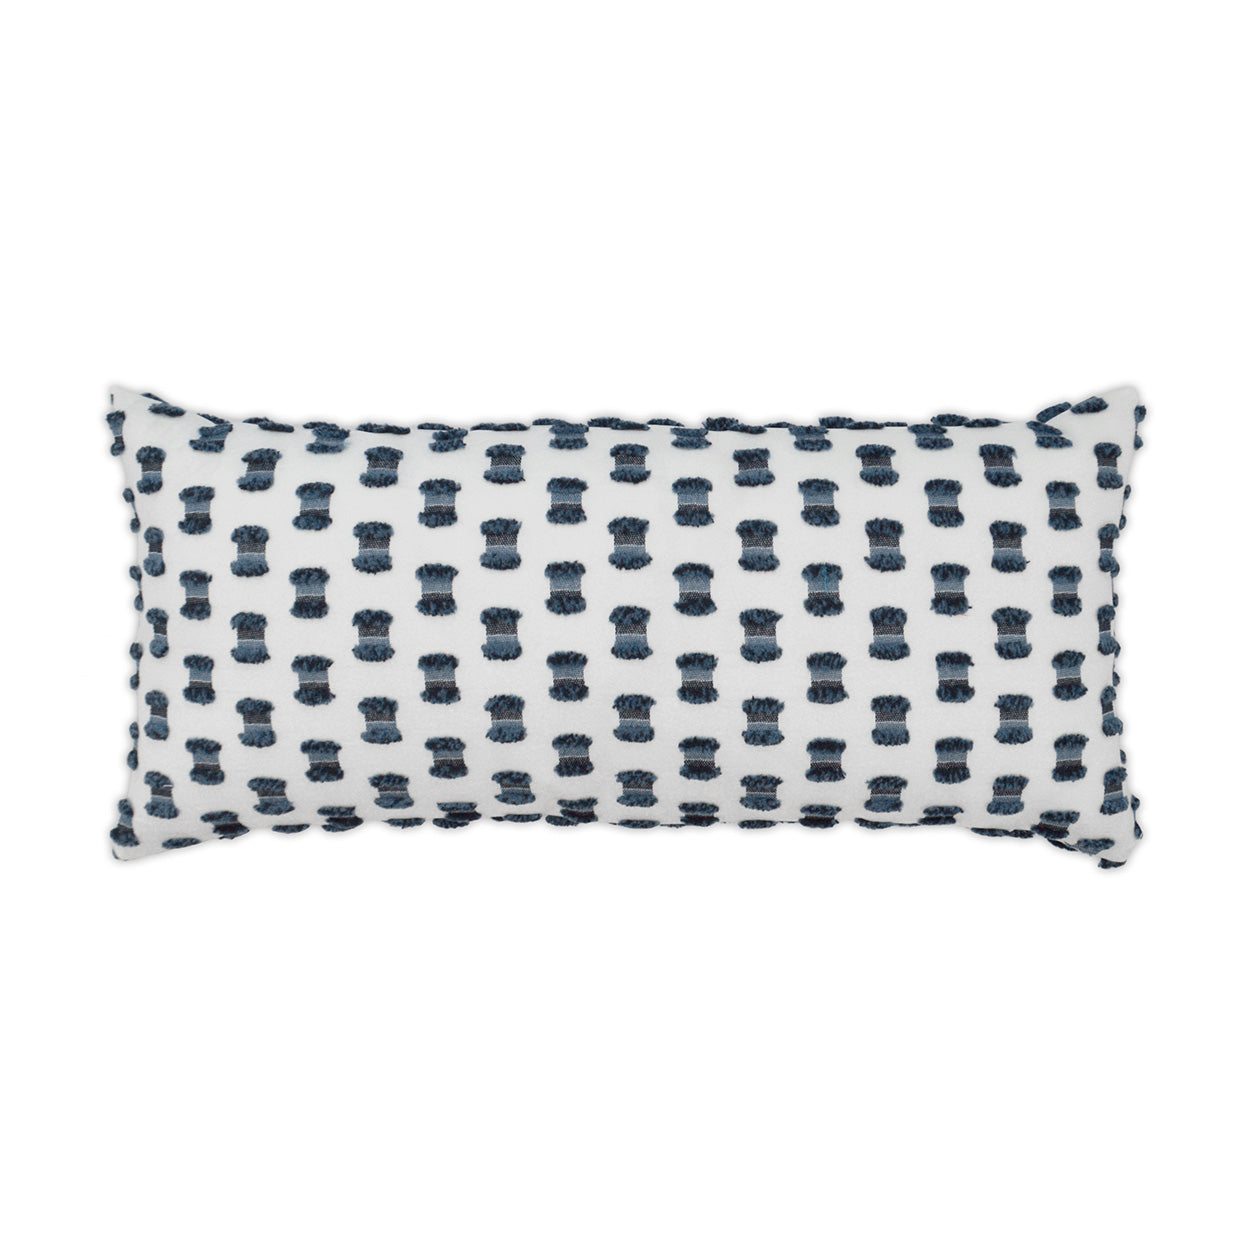 Outdoor Fifi Lumbar Pillow - Indigo